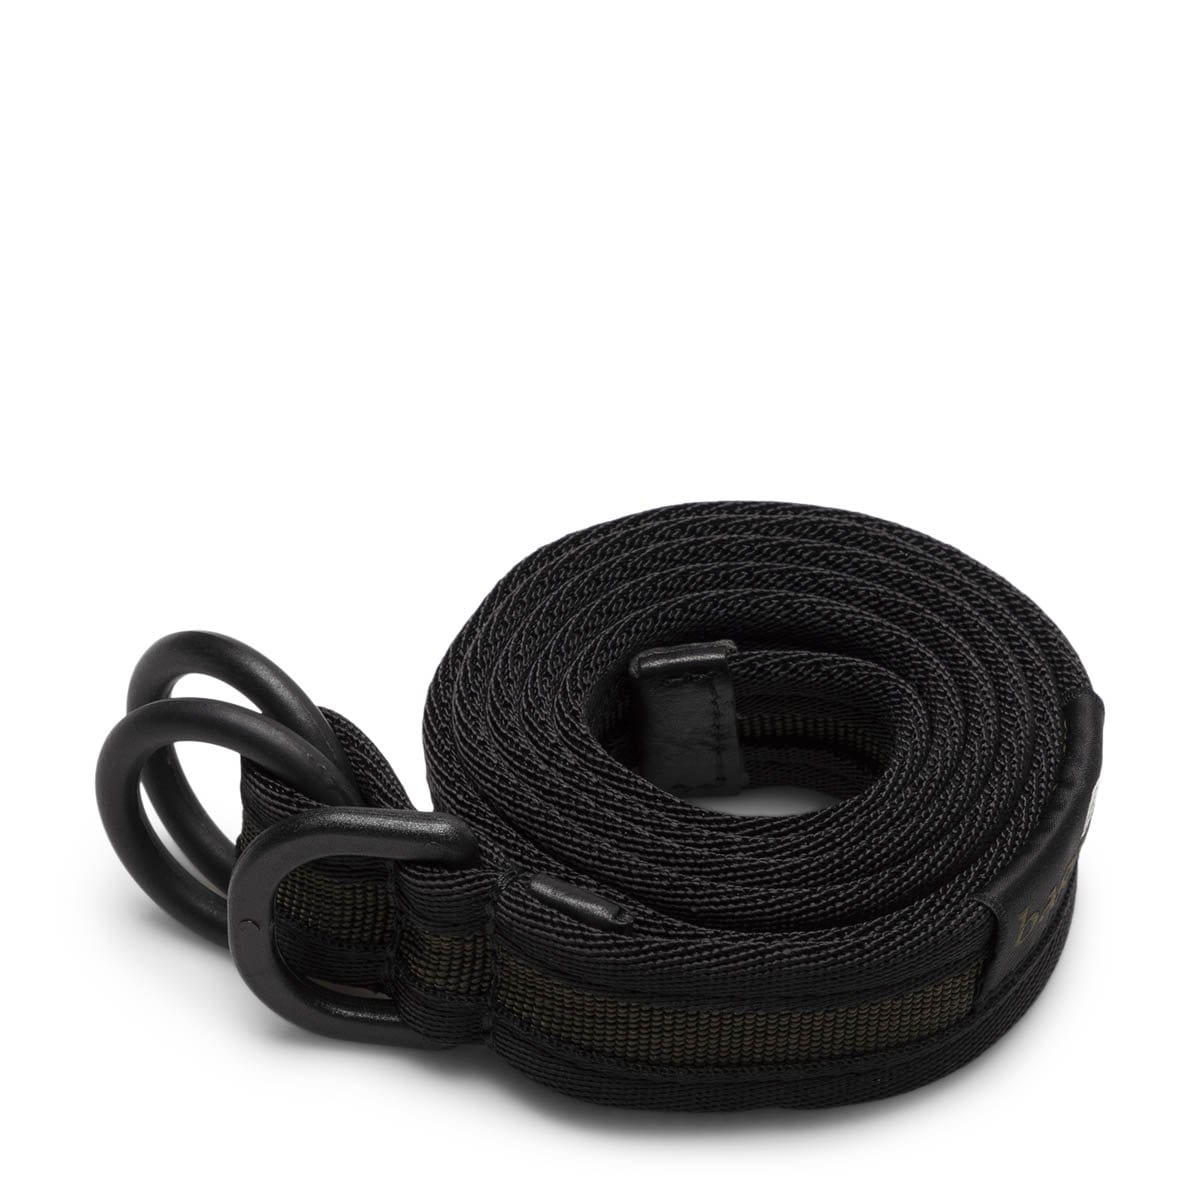 bagjack GOLF Belts BLACK/OLIVE / O/S DOUBLE O-RING BELT